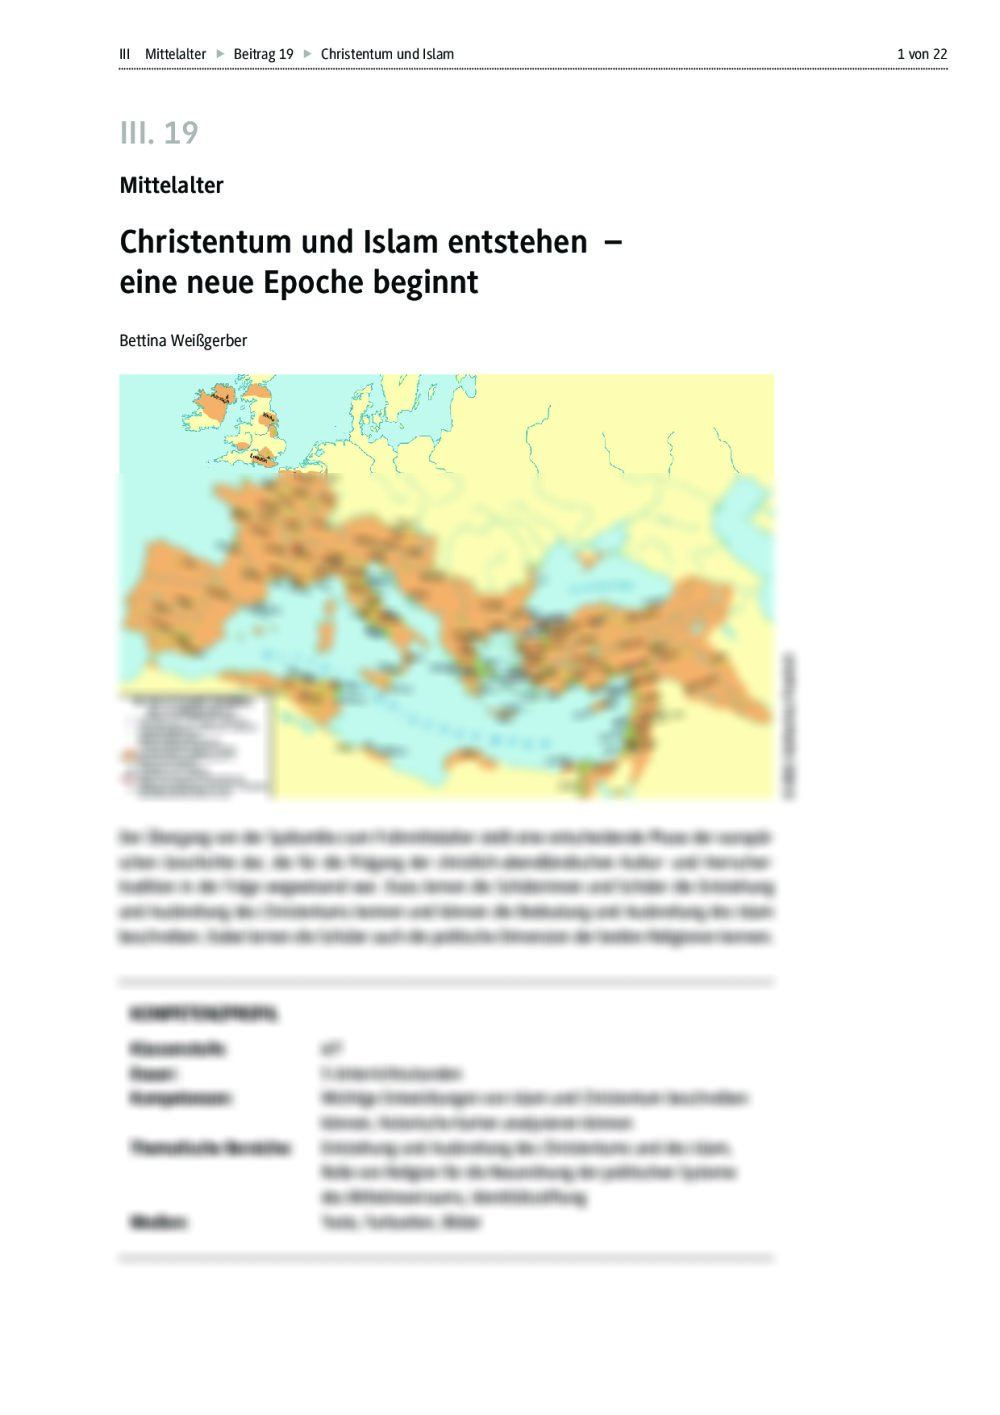 Christentum und Islam als Religionen einer neuen Epoche - Seite 1